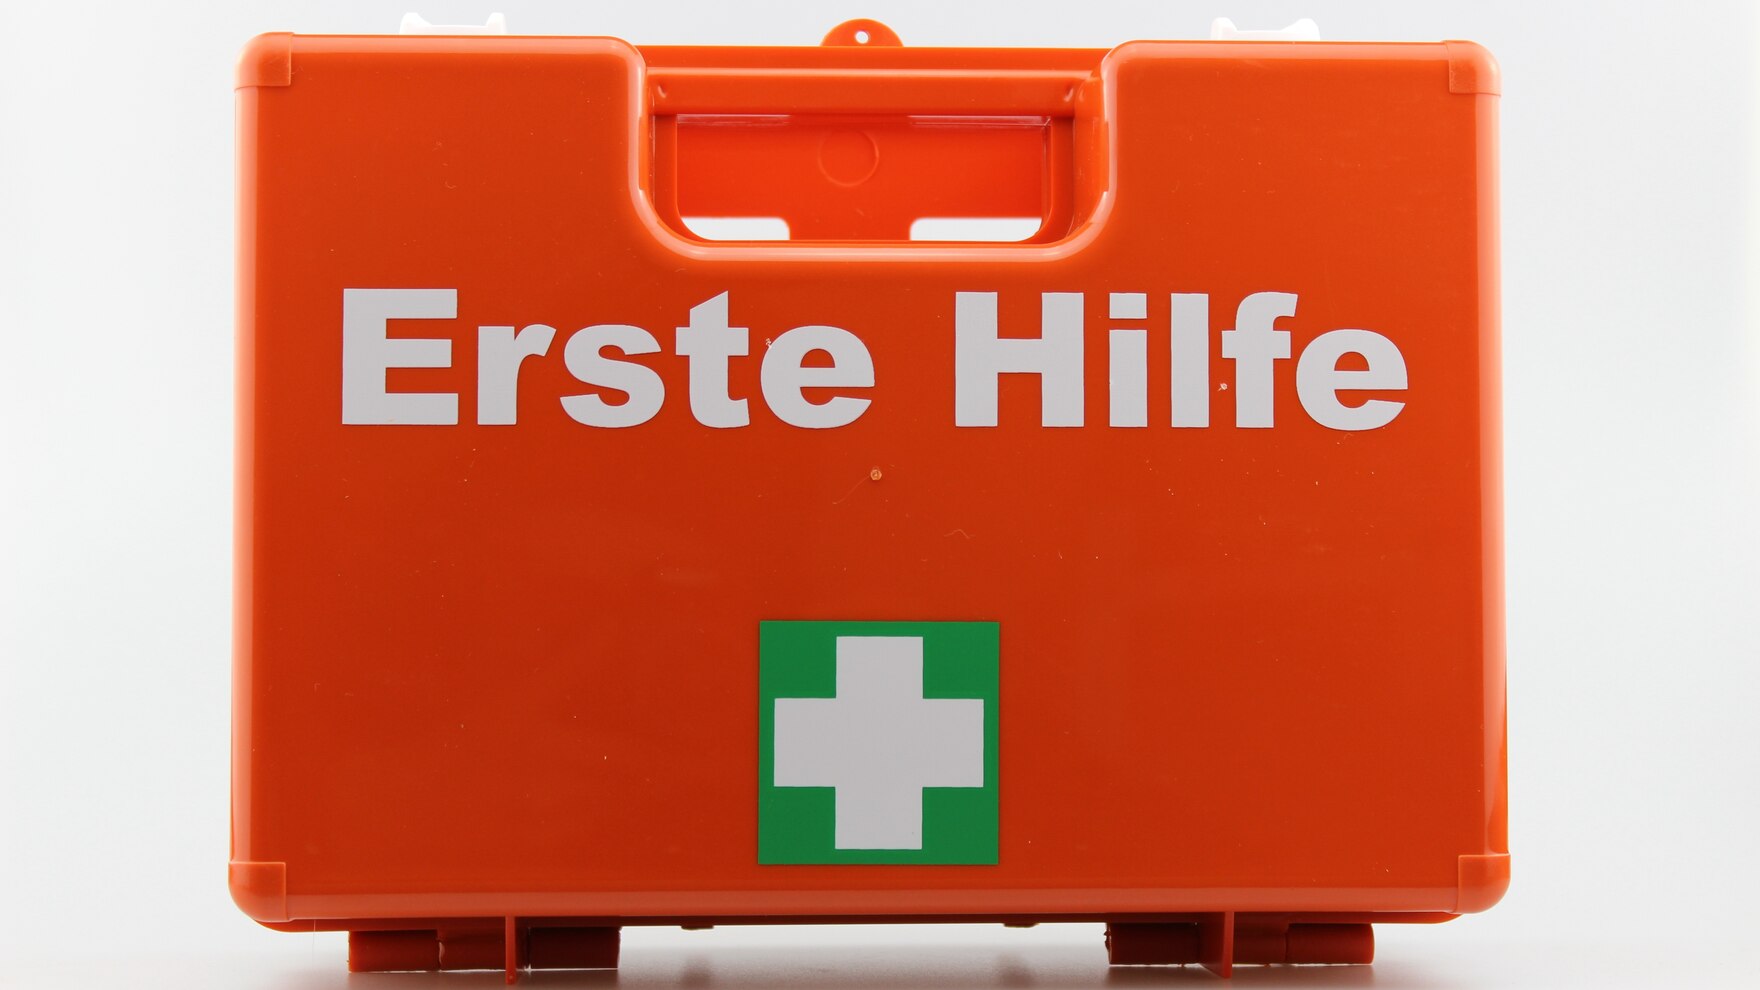 Erste Hilfe - Betriebliches Gesundheitsmanagement (BGM) - sachsen.de